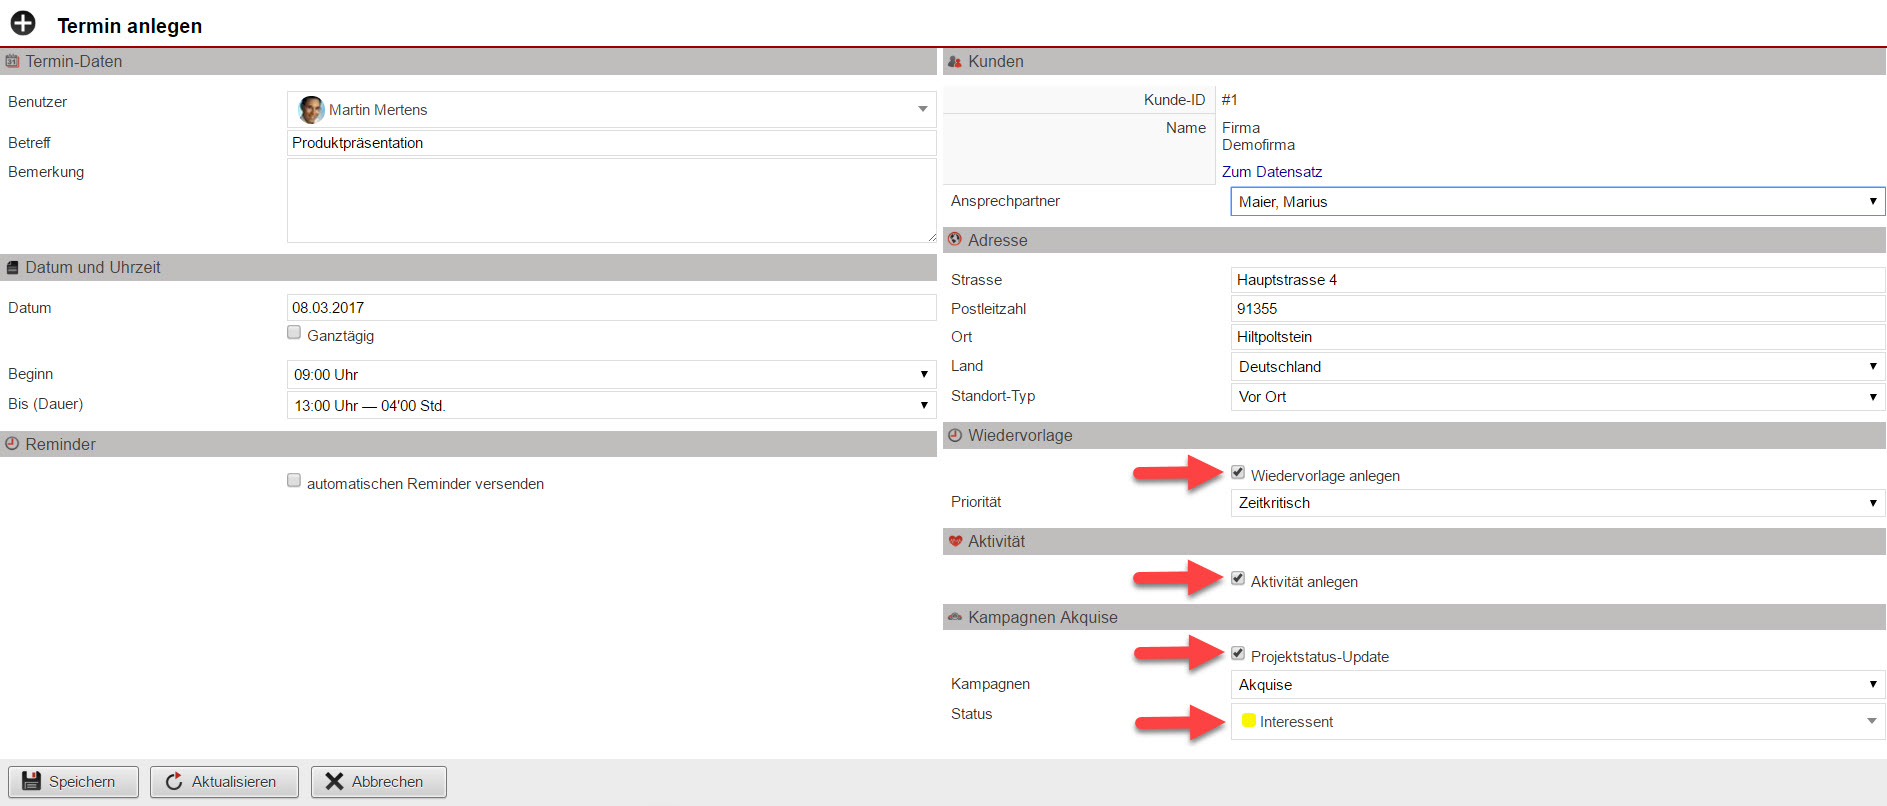 Screenshot Terminanalgenmaske mit Markierung der neuen Optionen zum Anlegen von Wiedervorlagen und Aktivitäten, sowie zum Status-Update